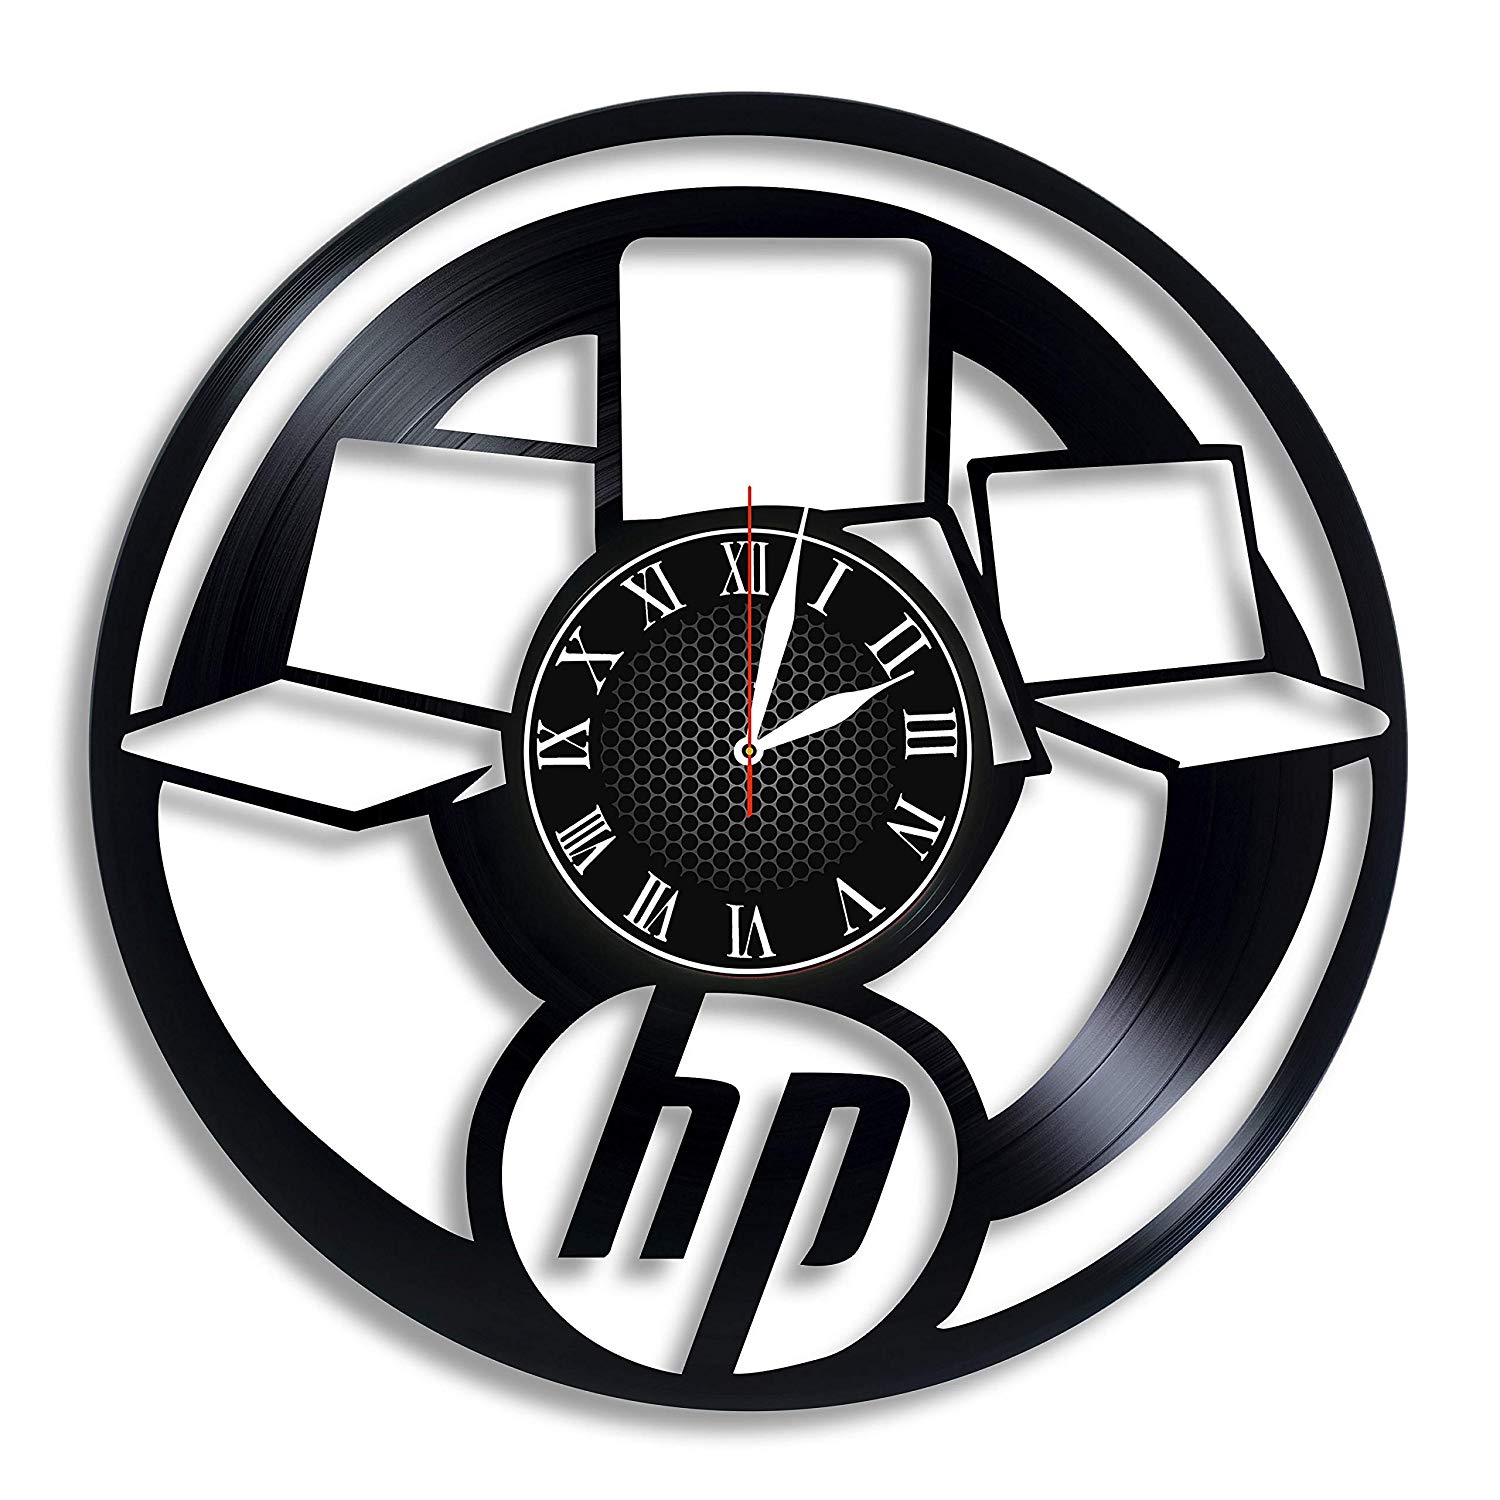 Packard Logo - Hewlett Packard Company Brand Logo Wall Clock, Gifts